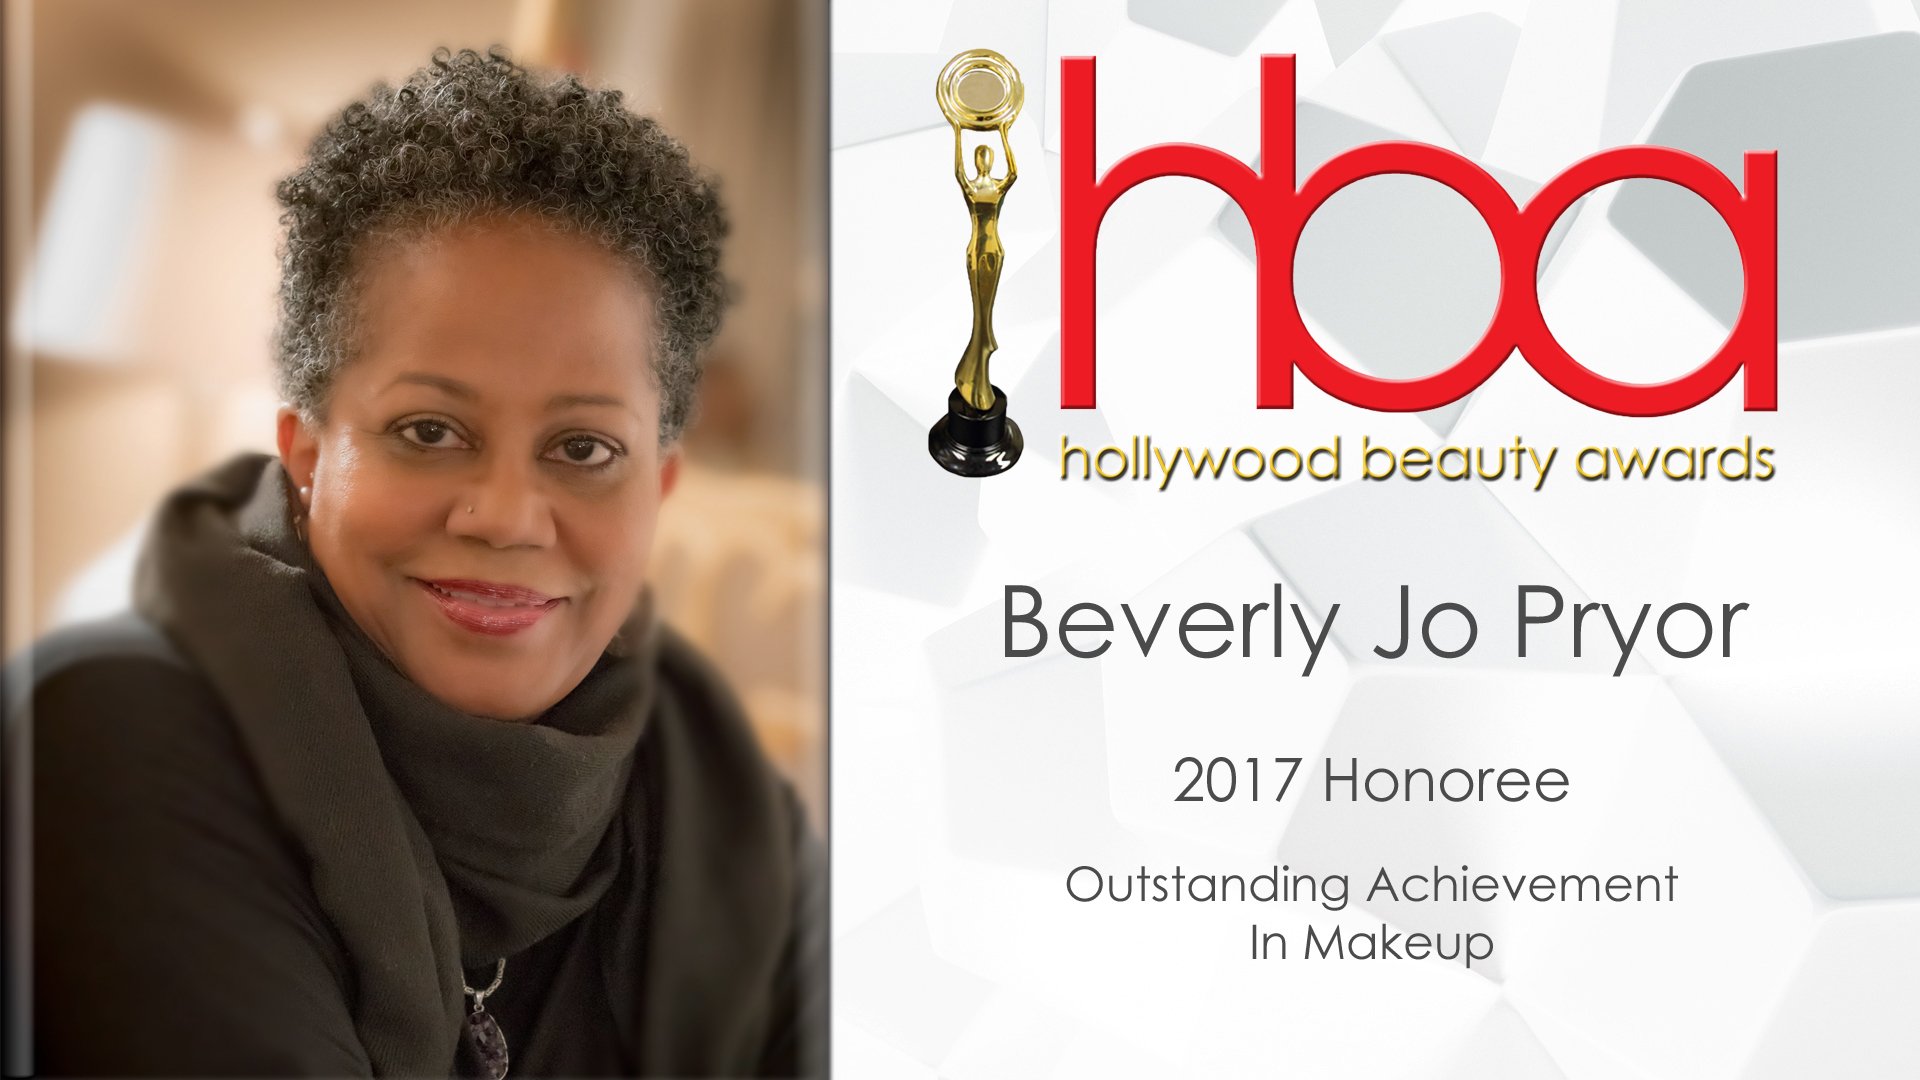 Beverly Jo Pryor, 2017 Hollywood Beauty Awards